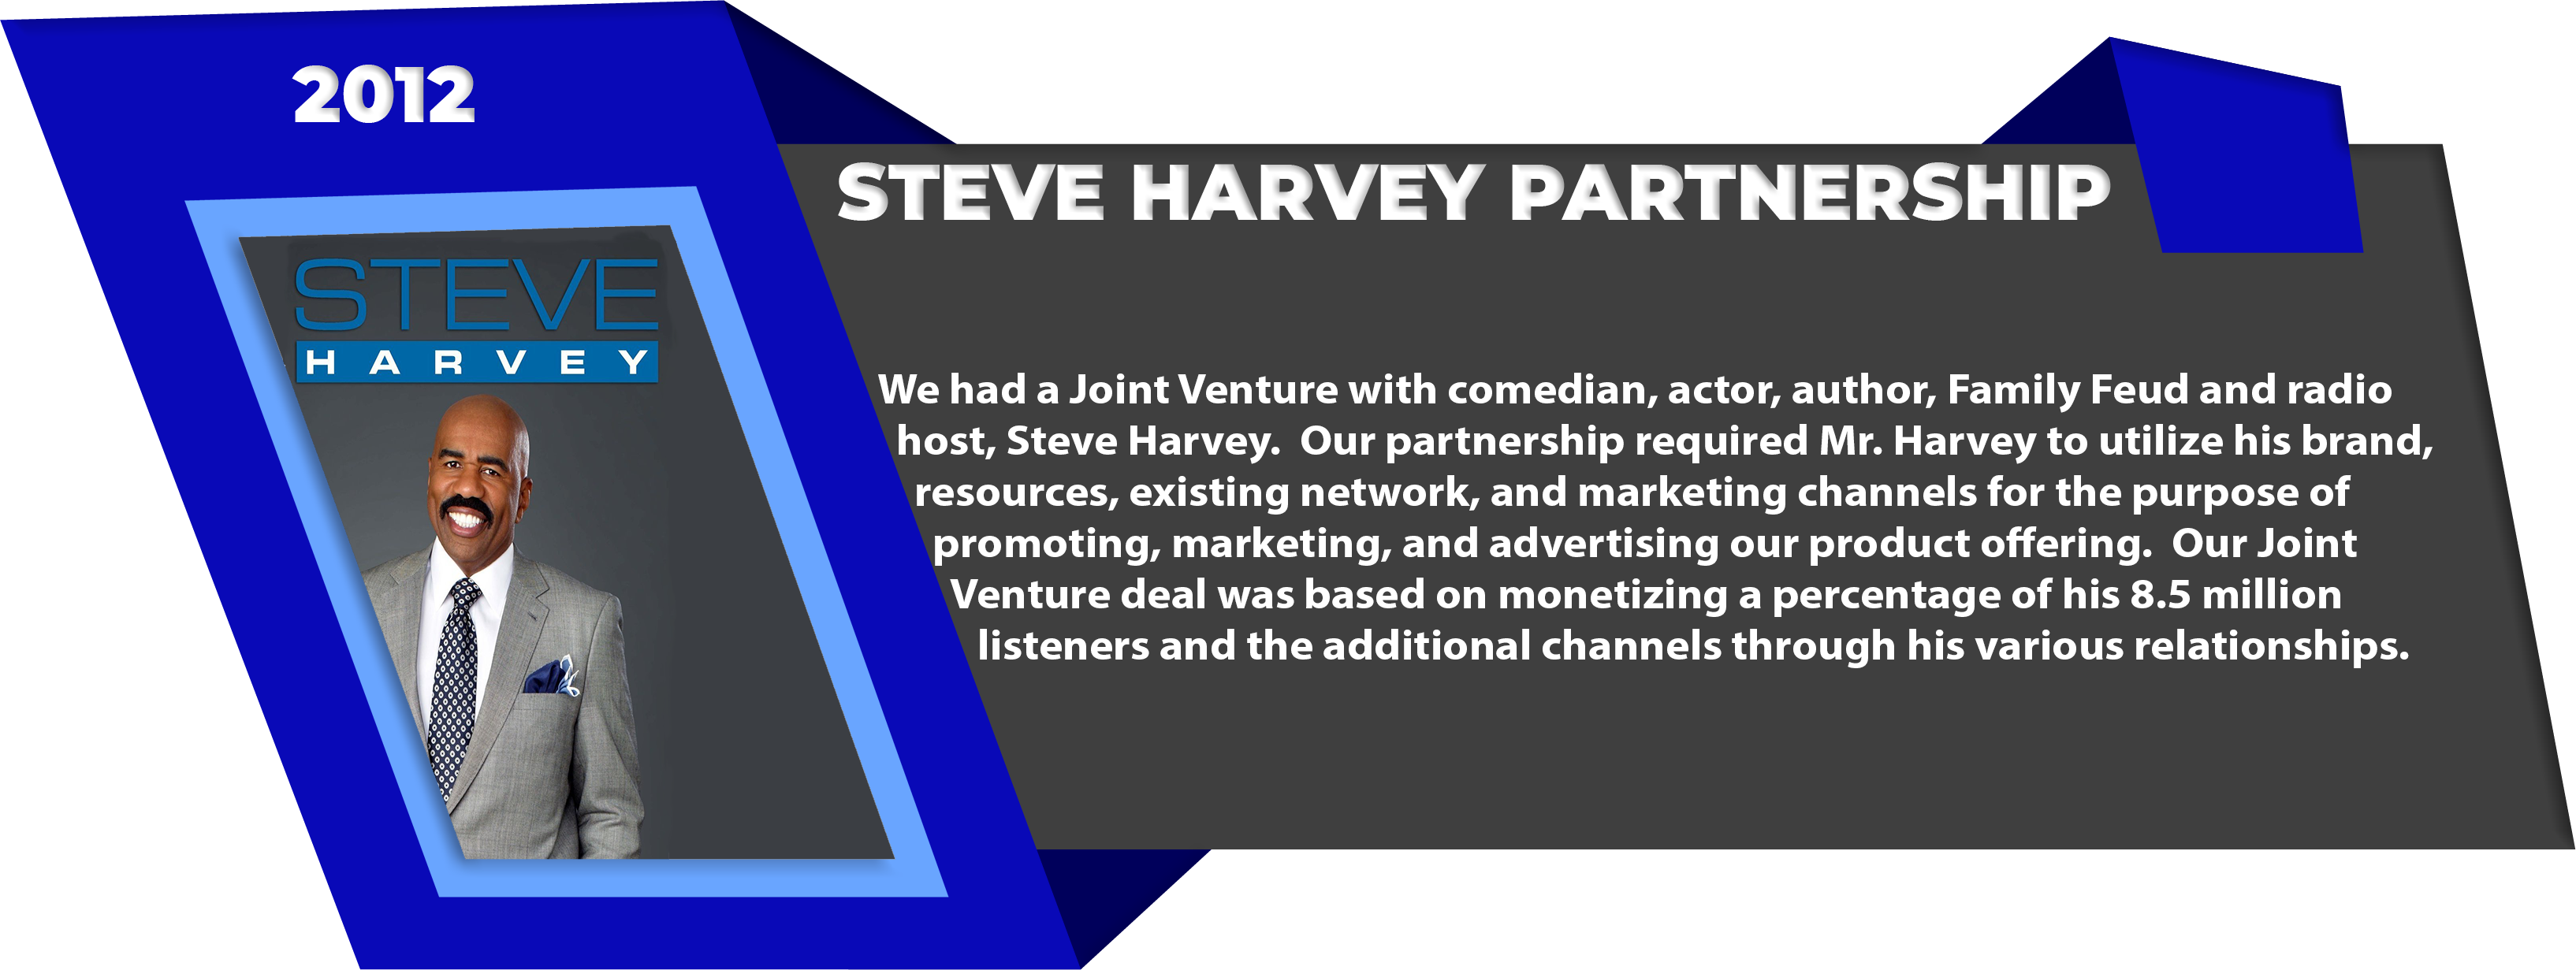 Steve Harvey Partnership 2012